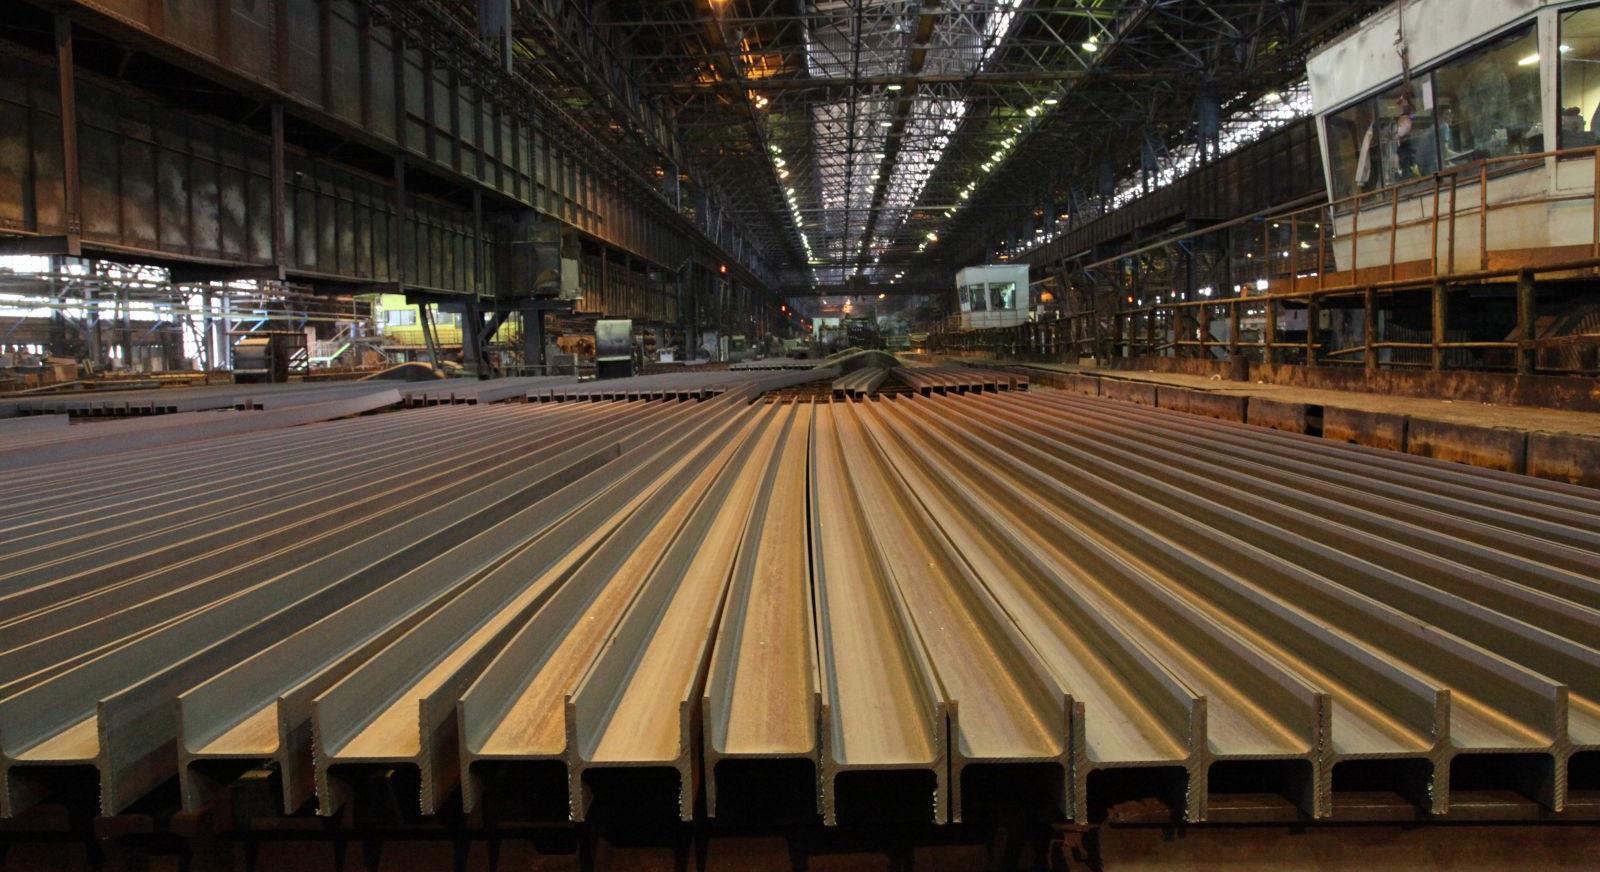 ذوب آهن، تنها تولیدکننده مقاطع سنگین فولادی است